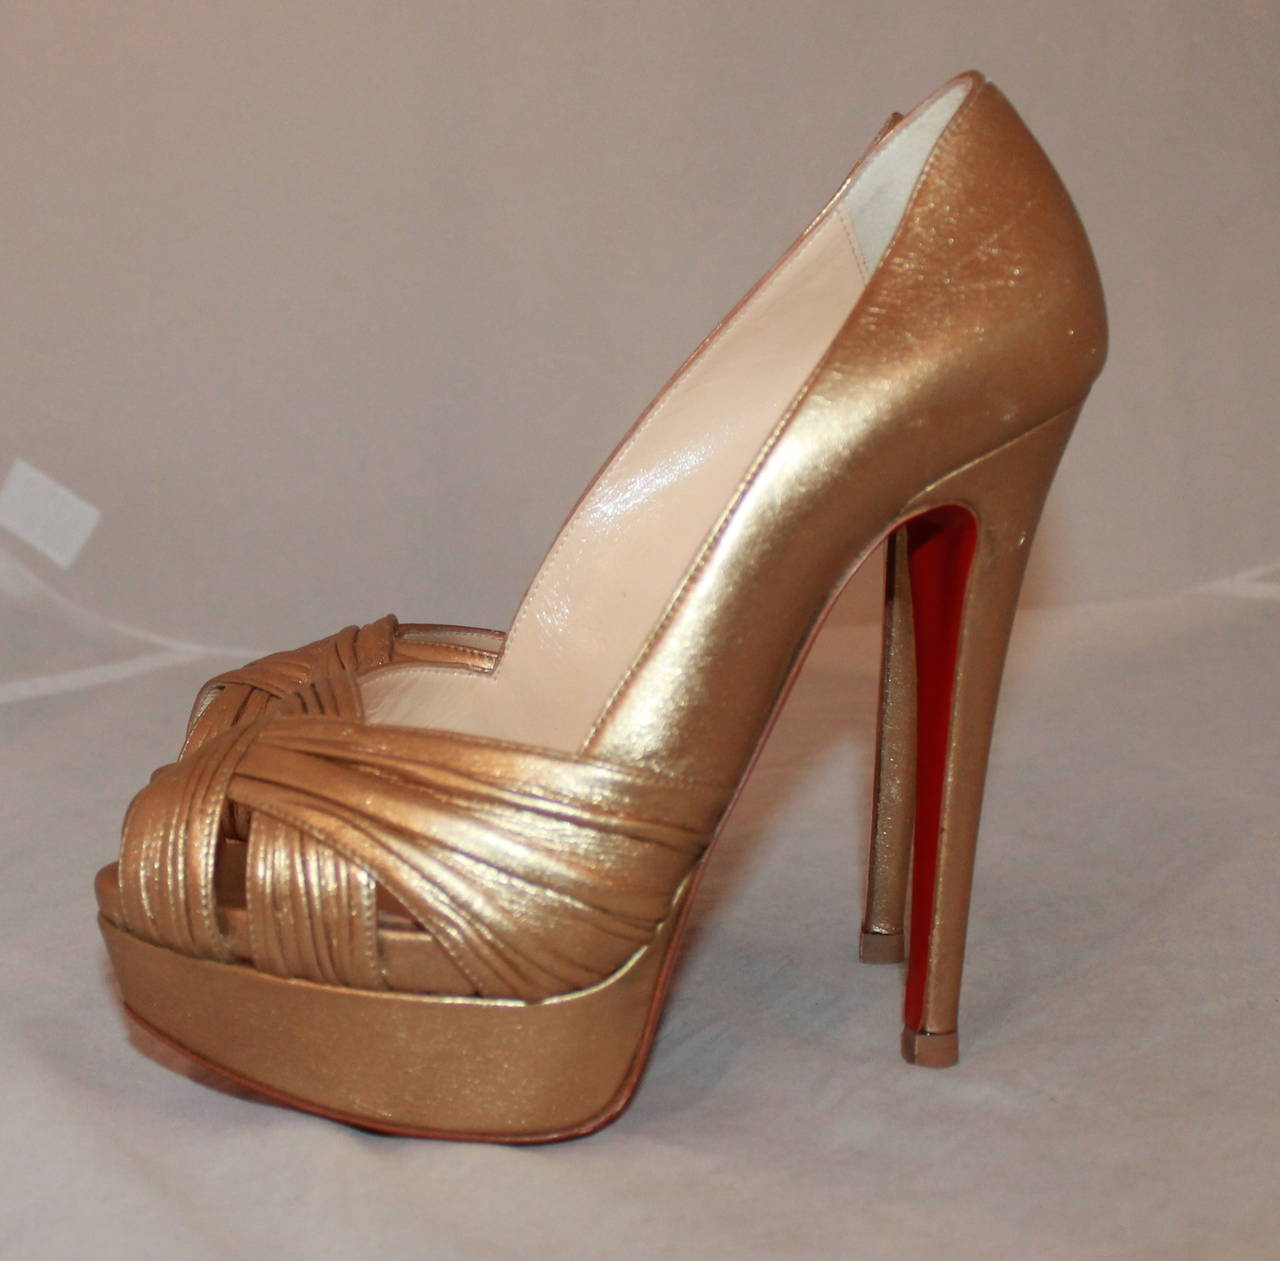 Christian Louboutin Golden Platform Heels - 36 For Sale at 1stdibs